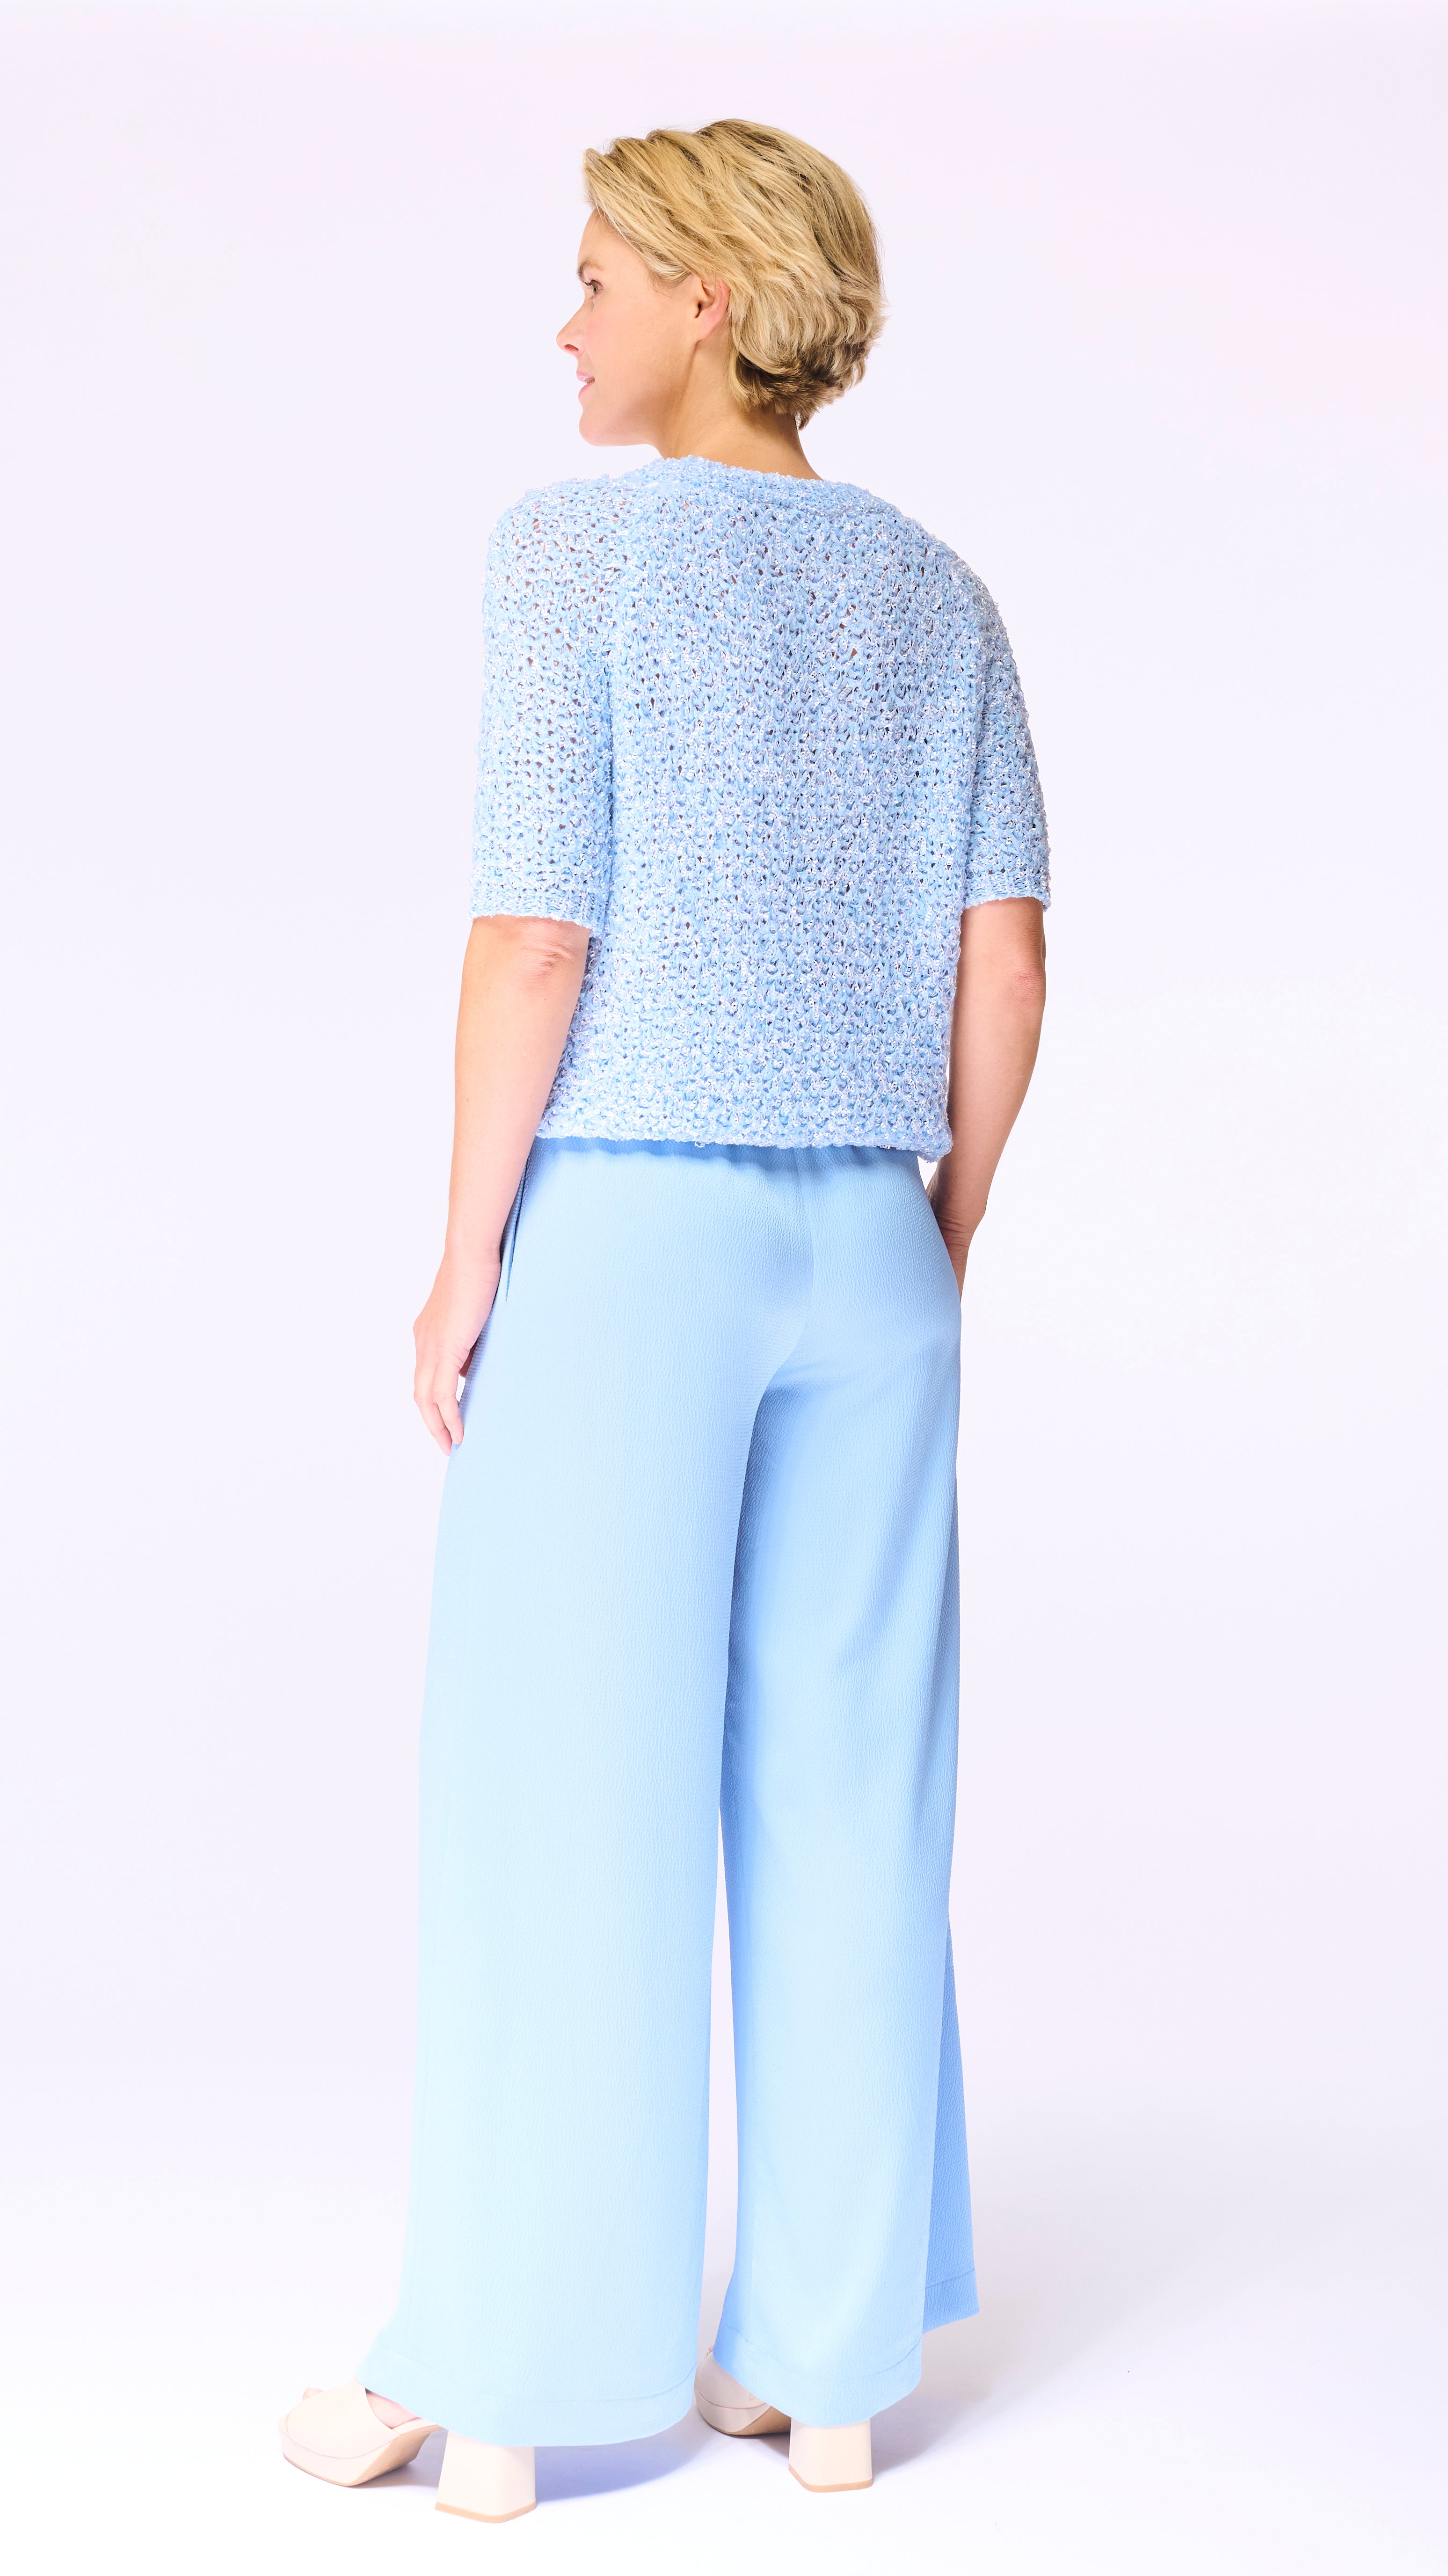 Pantalon Bleu pâle Accent Fashion (Soleil 4730/Iceblue)